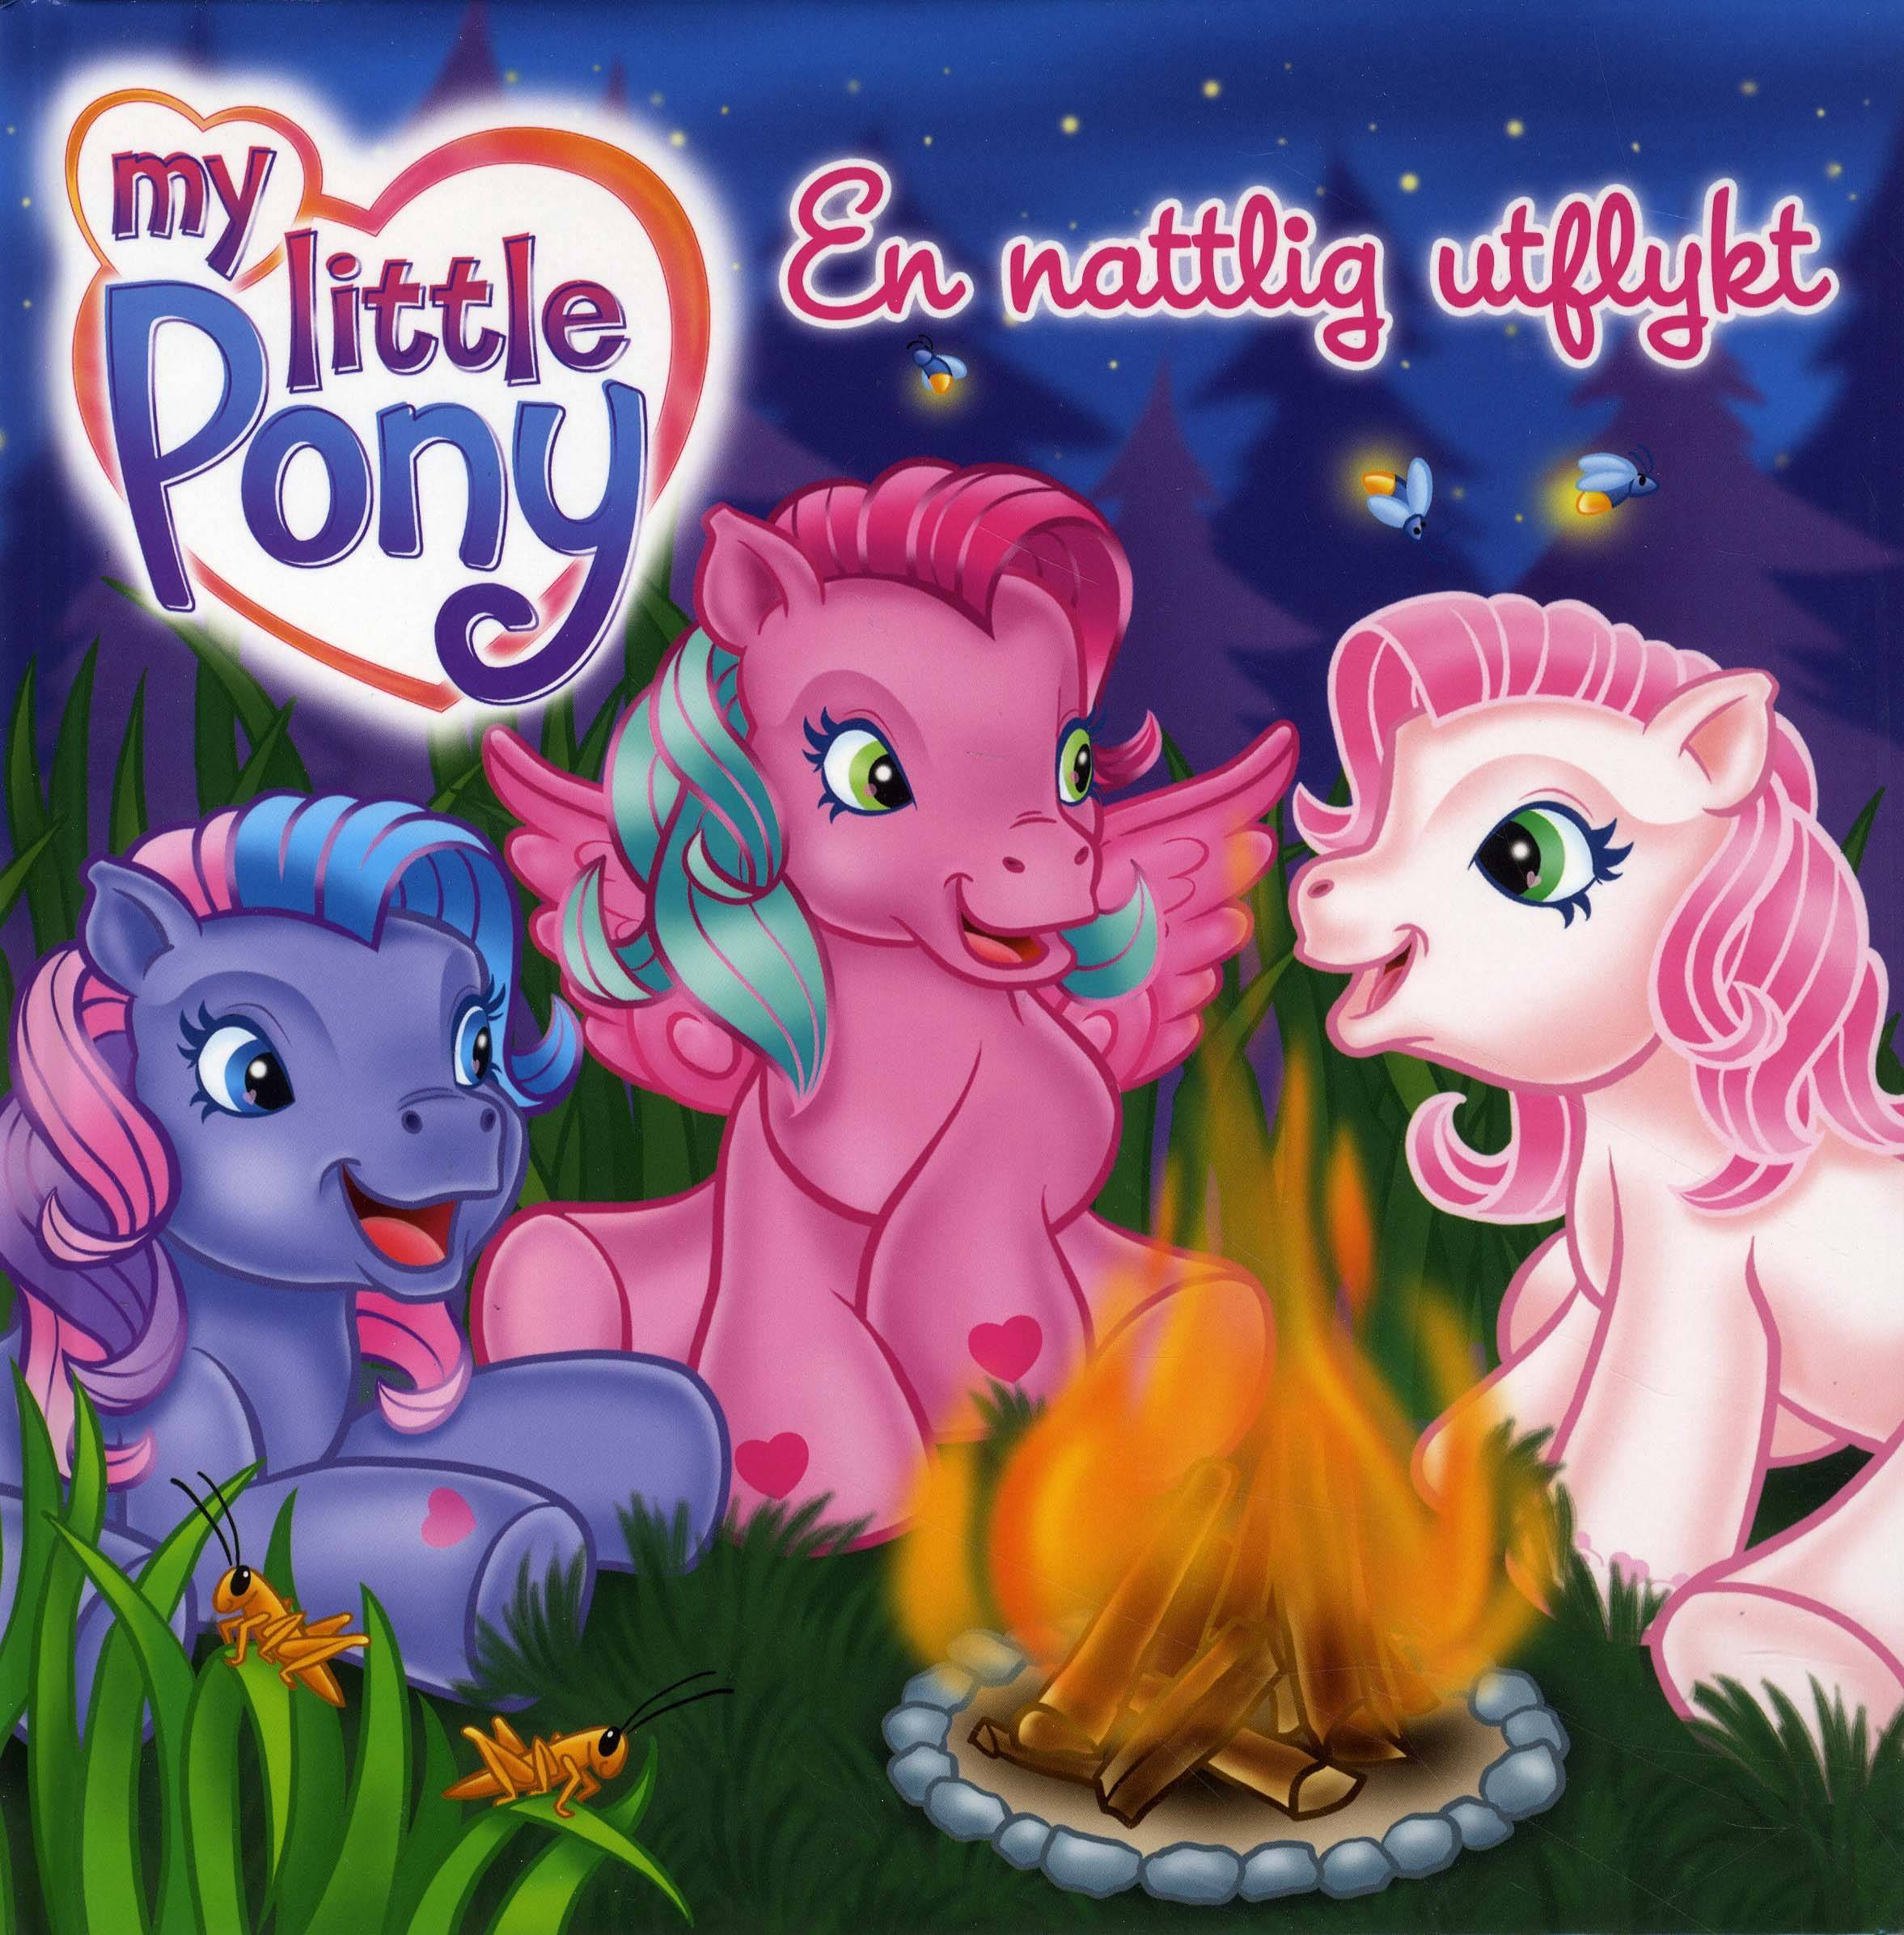 My Little Pony : En nattlig utflykt